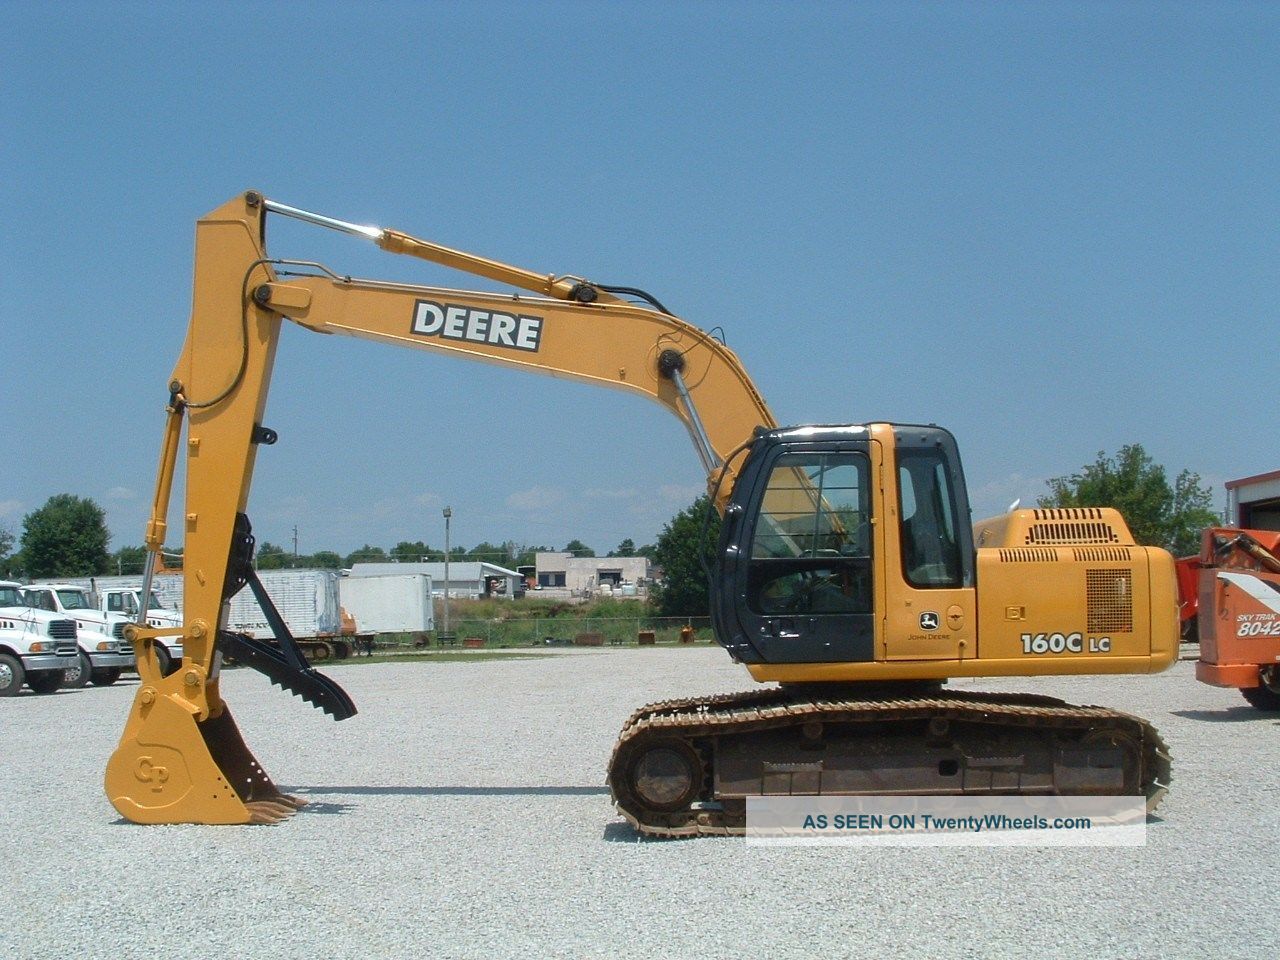 2006 John Deere 160c Lc Excavator